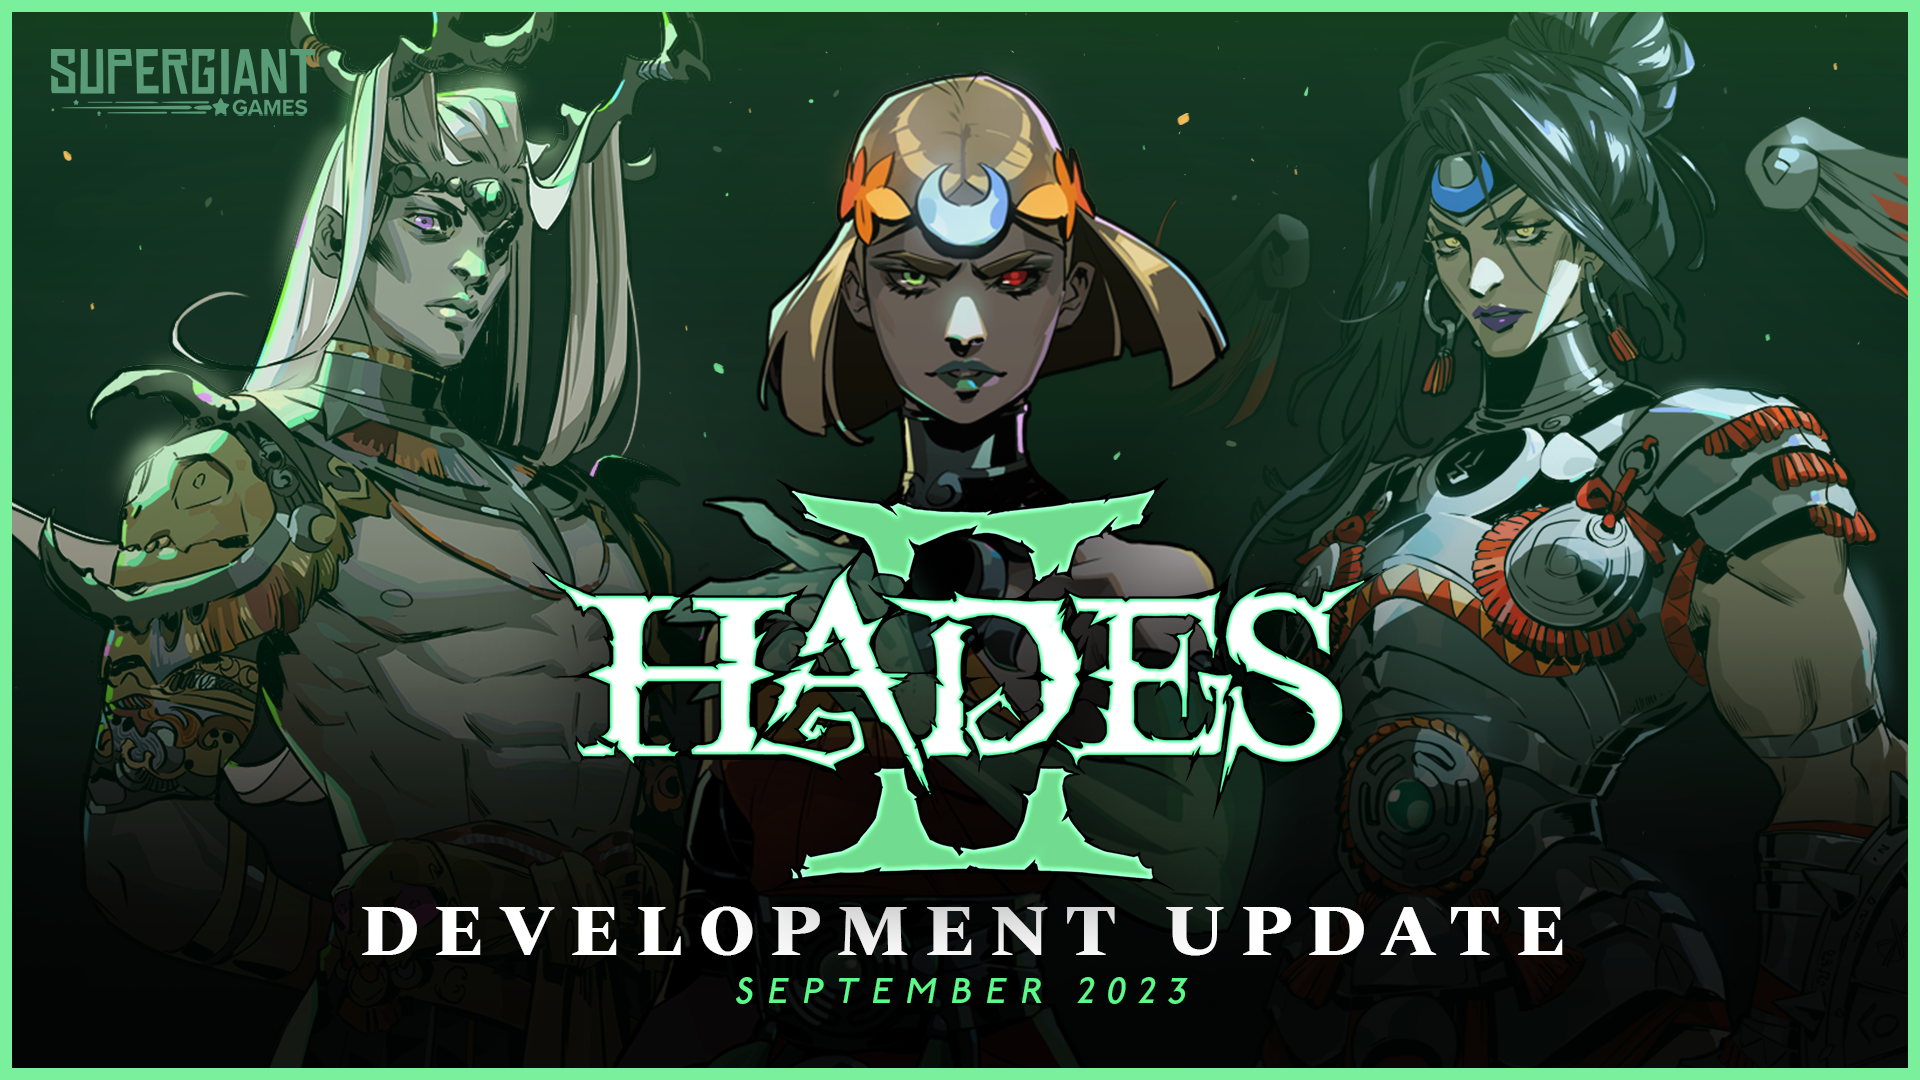 อีกหนึ่งเกมเด่นที่น่าจับตามองคือ Hades II ภาคต่อของเกม Hades ที่กวาดรางวัลมากมายในปี 2020 แต่หลังจากเปิดตัวภาคต่อแล้วก็เงียบหายไปนาน